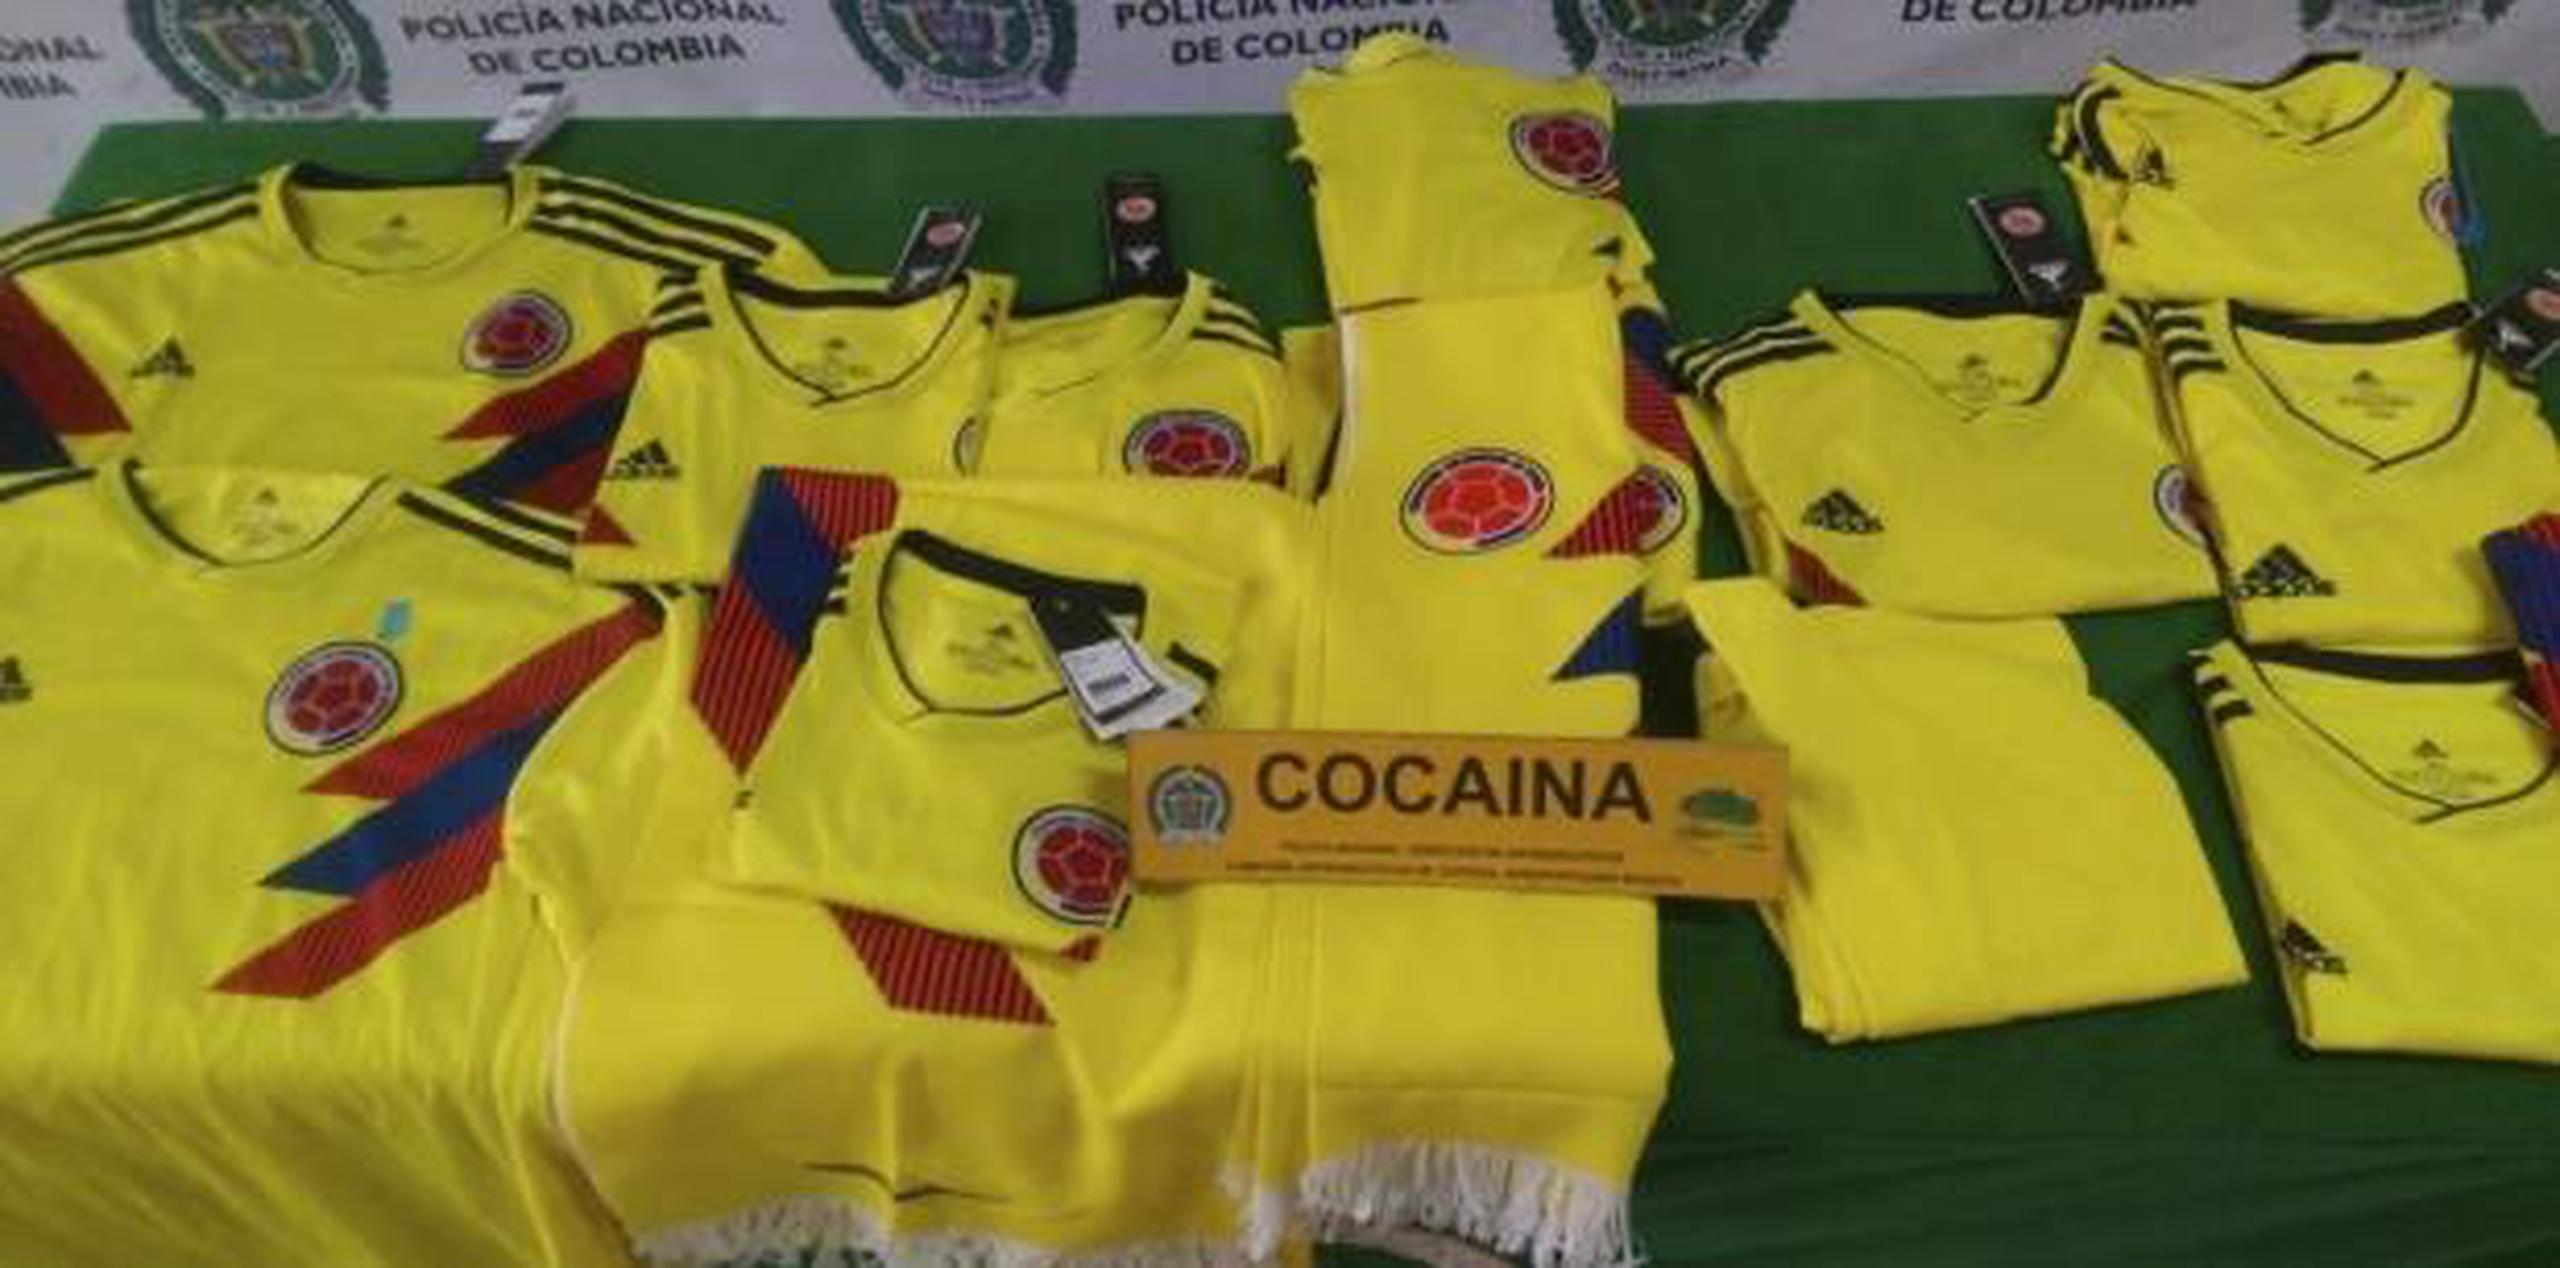 En esta foto suministrada por la Policía Nacional de Colombia se muestra unas réplicas de la camiseta de la selección de Colombia impregnadas con cocaína. (AP)